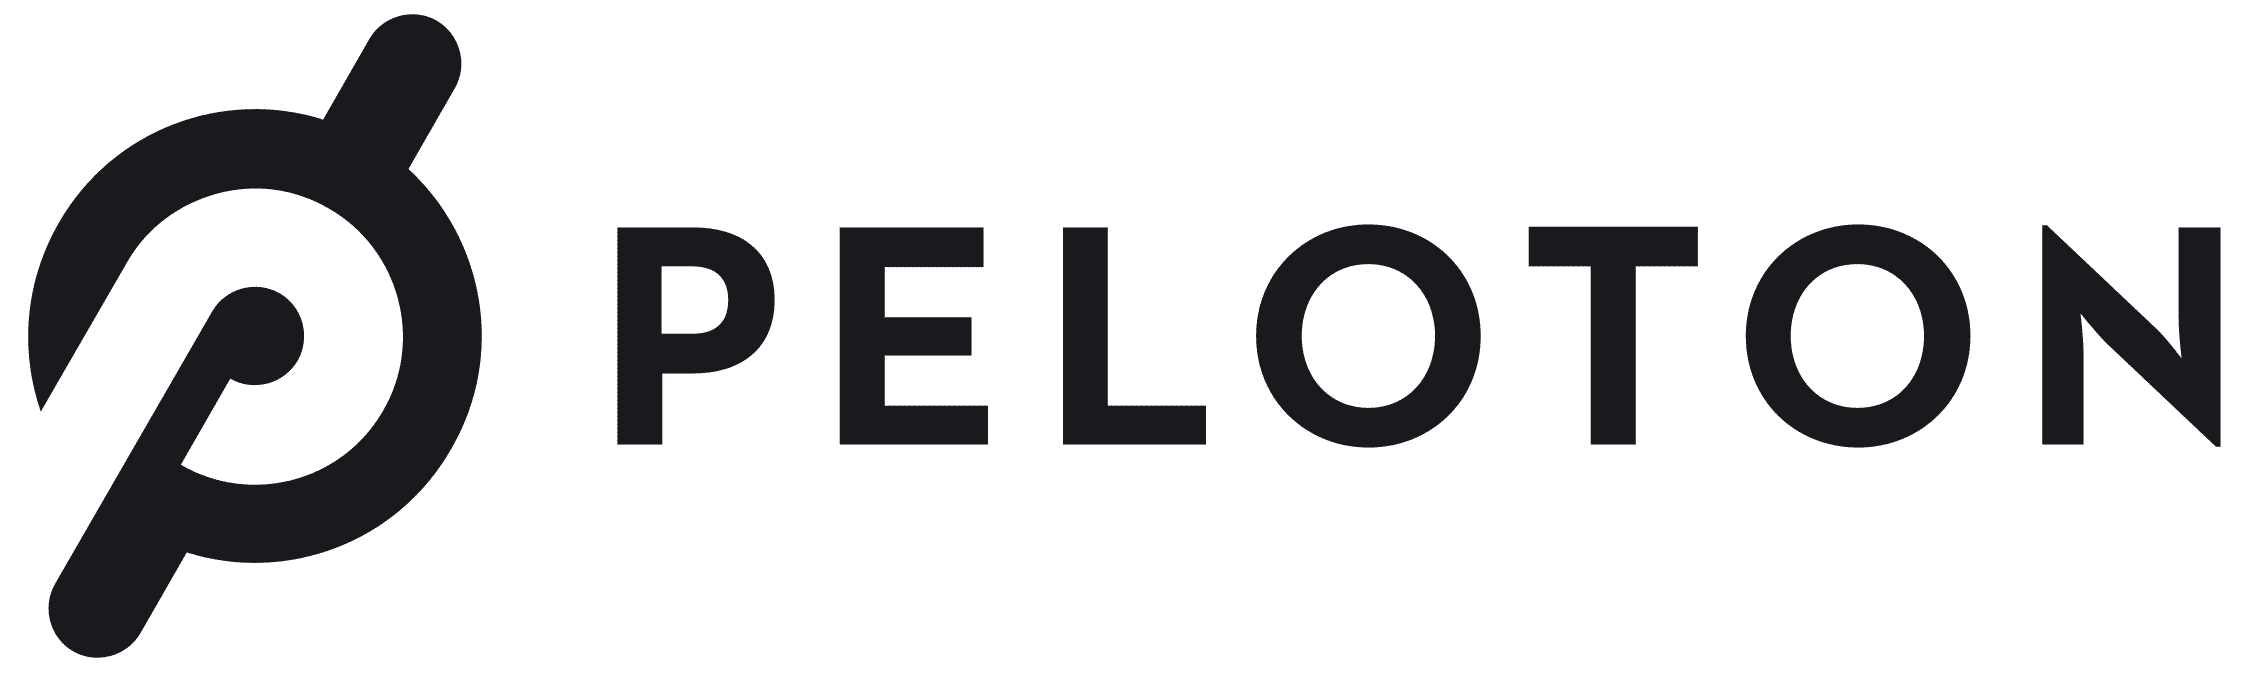 Peloton-logo.png